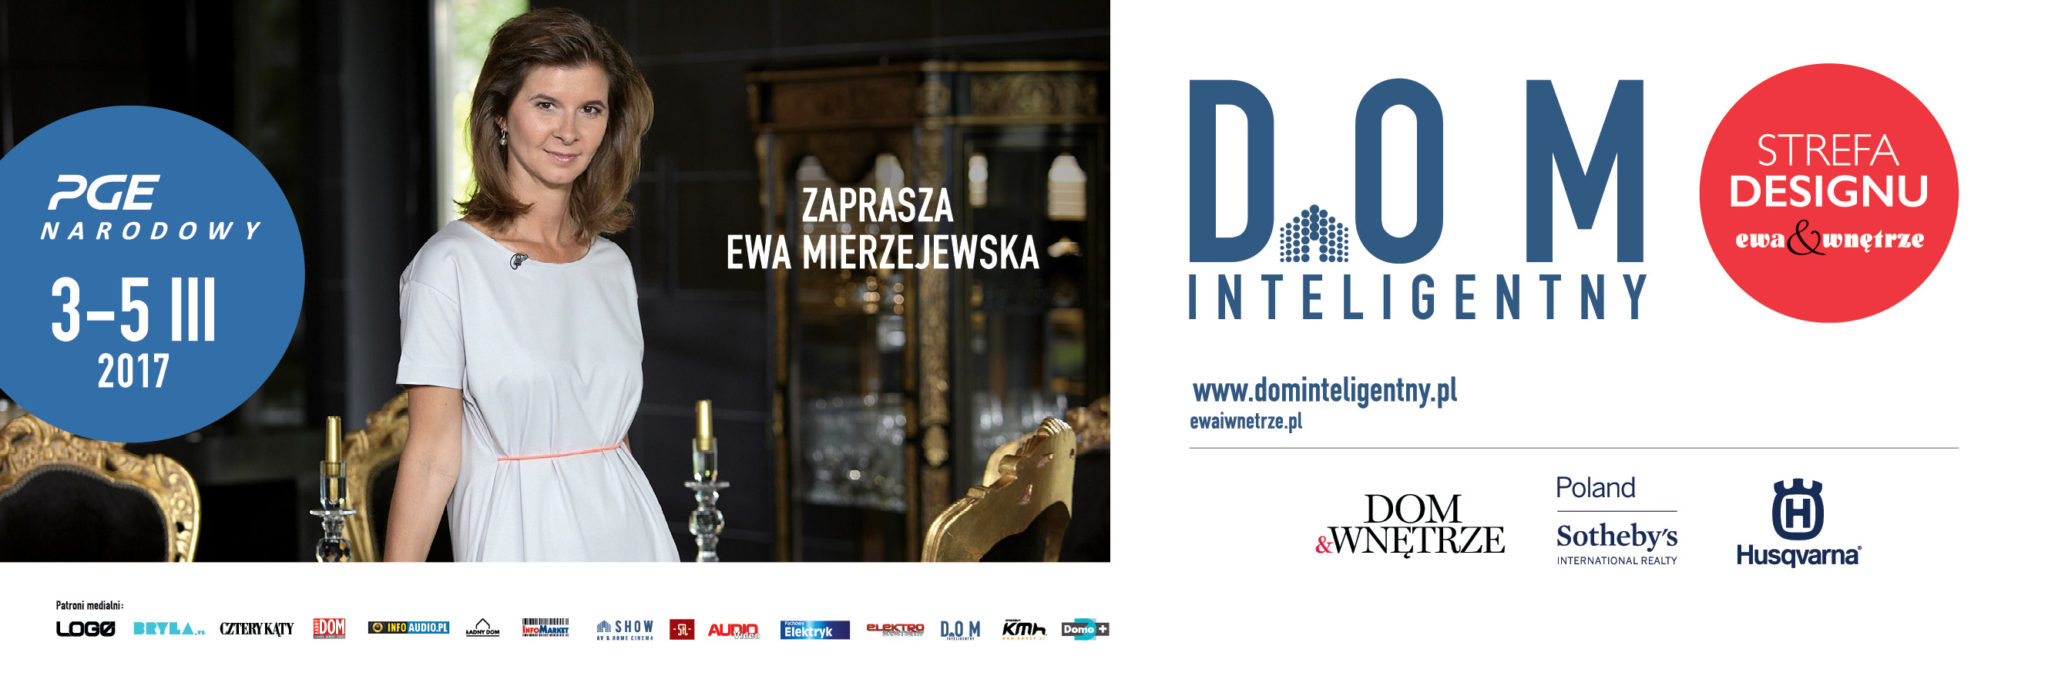 DOM INTELIGENTNY i STREFA DESIGNU ewa & wnętrze 2017 ponownie w Warszawie!